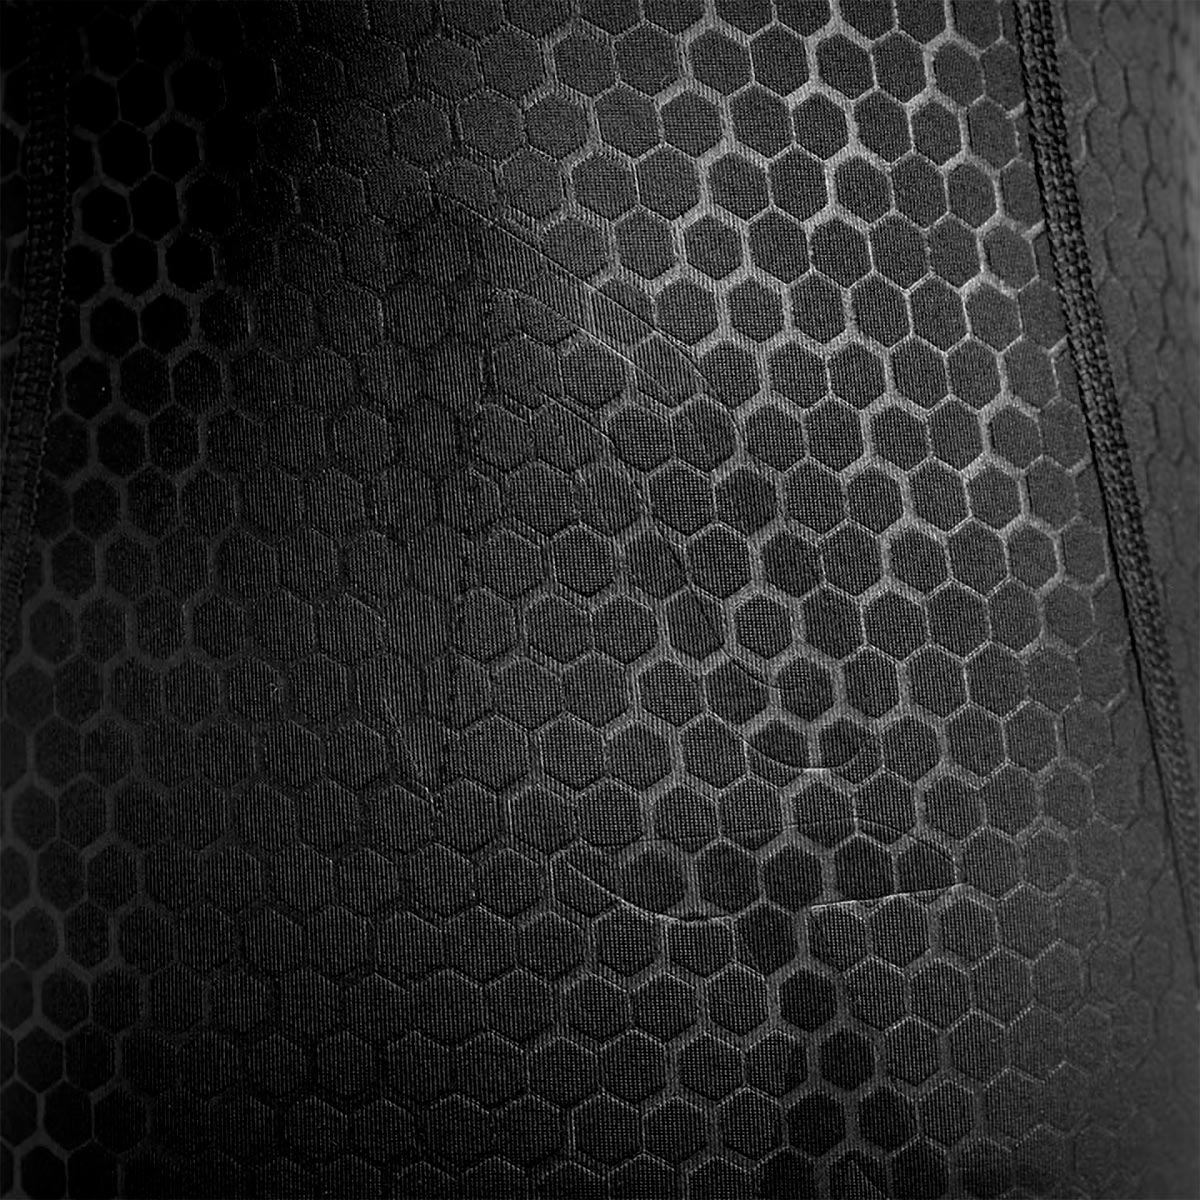 Ekoï 3D Gel Perf Hexa, un culotte con tejido de patrón hexagonal texturizado que mejora la aerodinámica